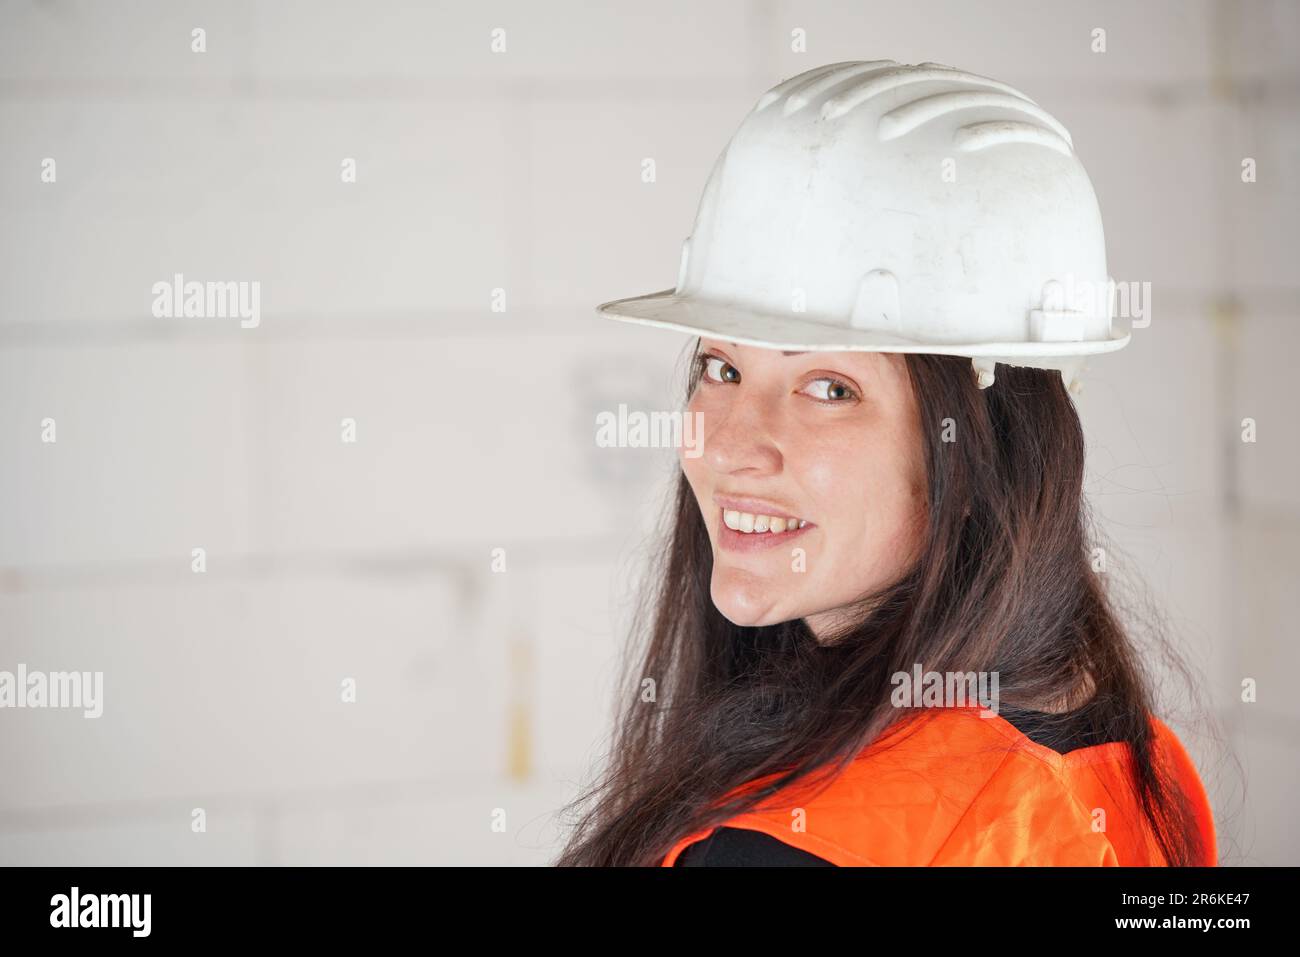 Jeune femme en casque blanc et gilet orange haute visibilité, cheveux longs foncés, regardant par-dessus son épaule dans l'appareil photo, souriant. Construction floue si Banque D'Images